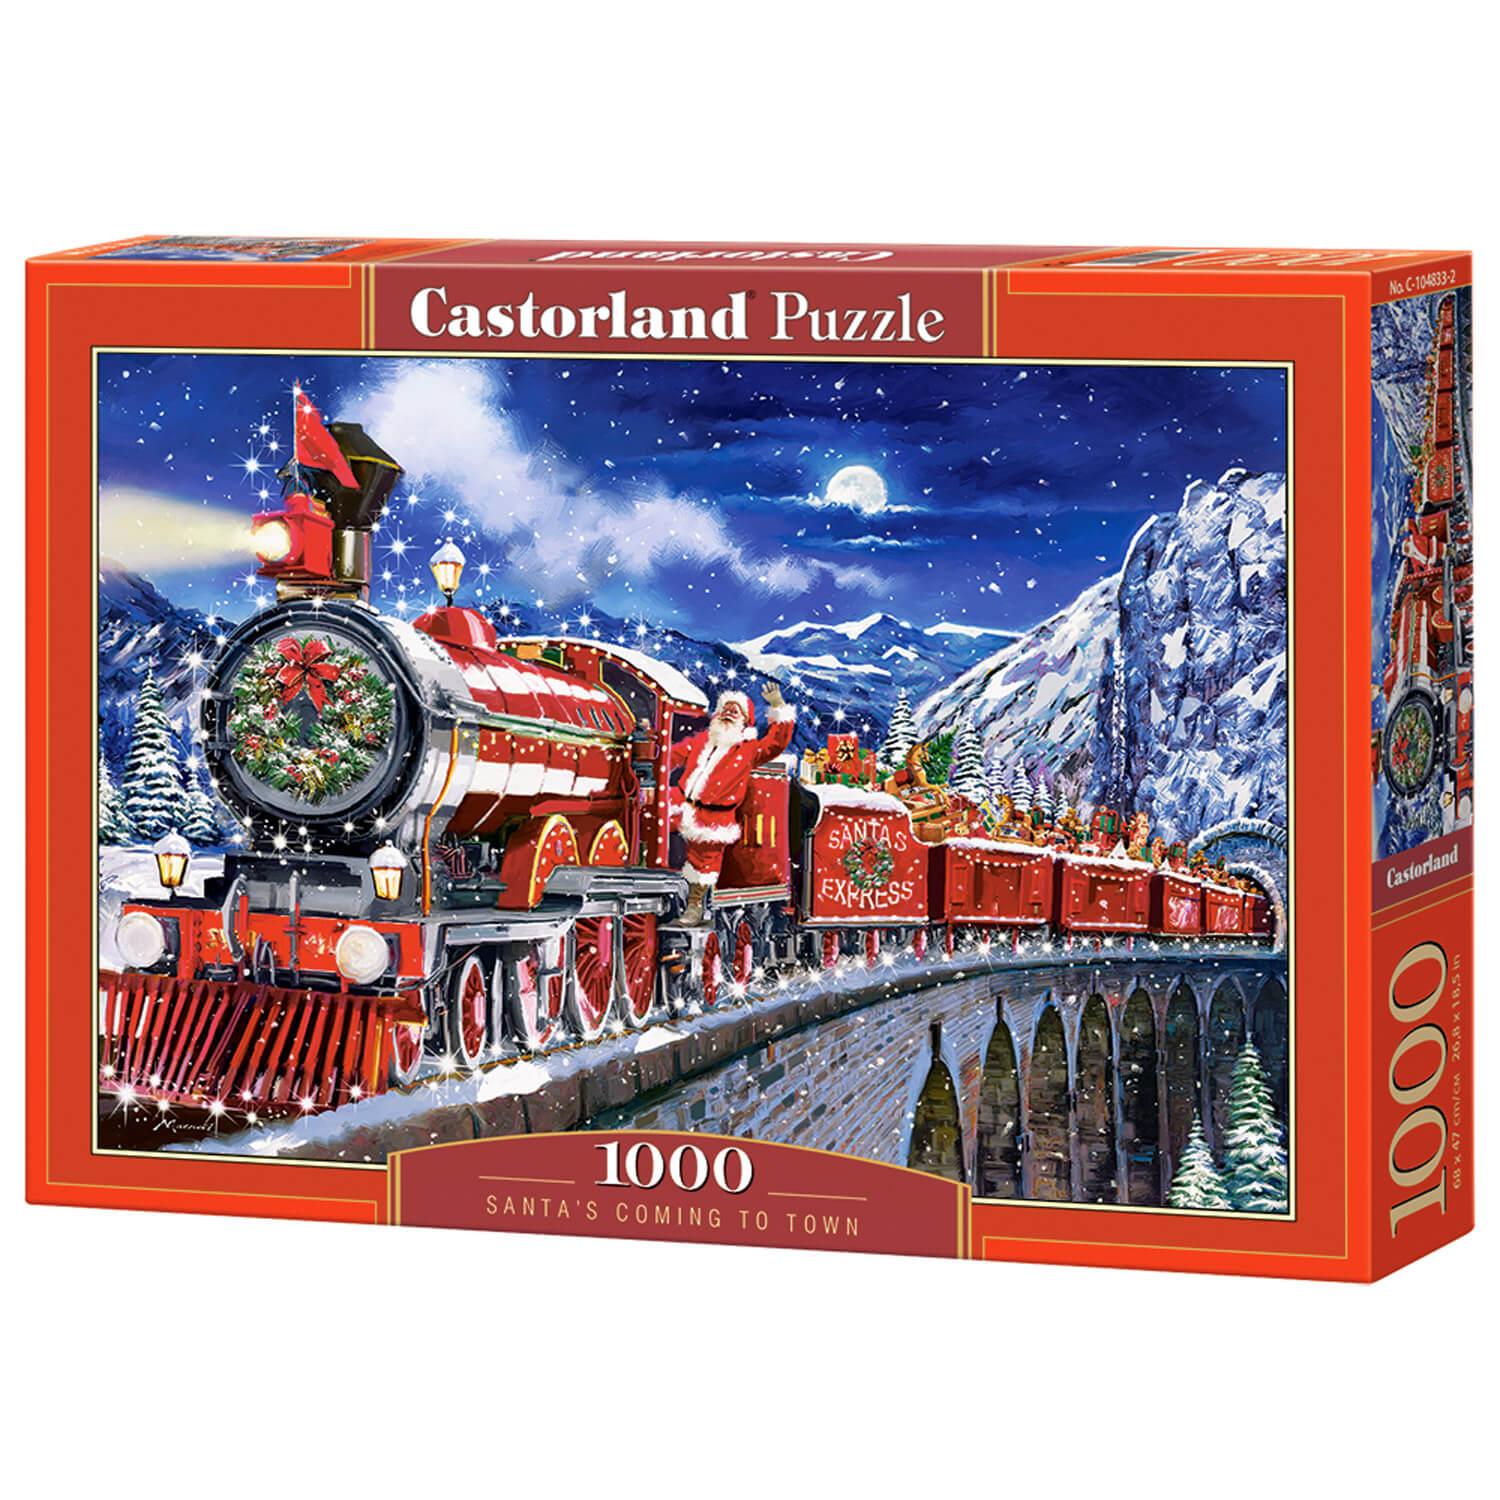 Puzzle 1000 p - Le marché de Noël, Puzzle adulte, Puzzle, Produits